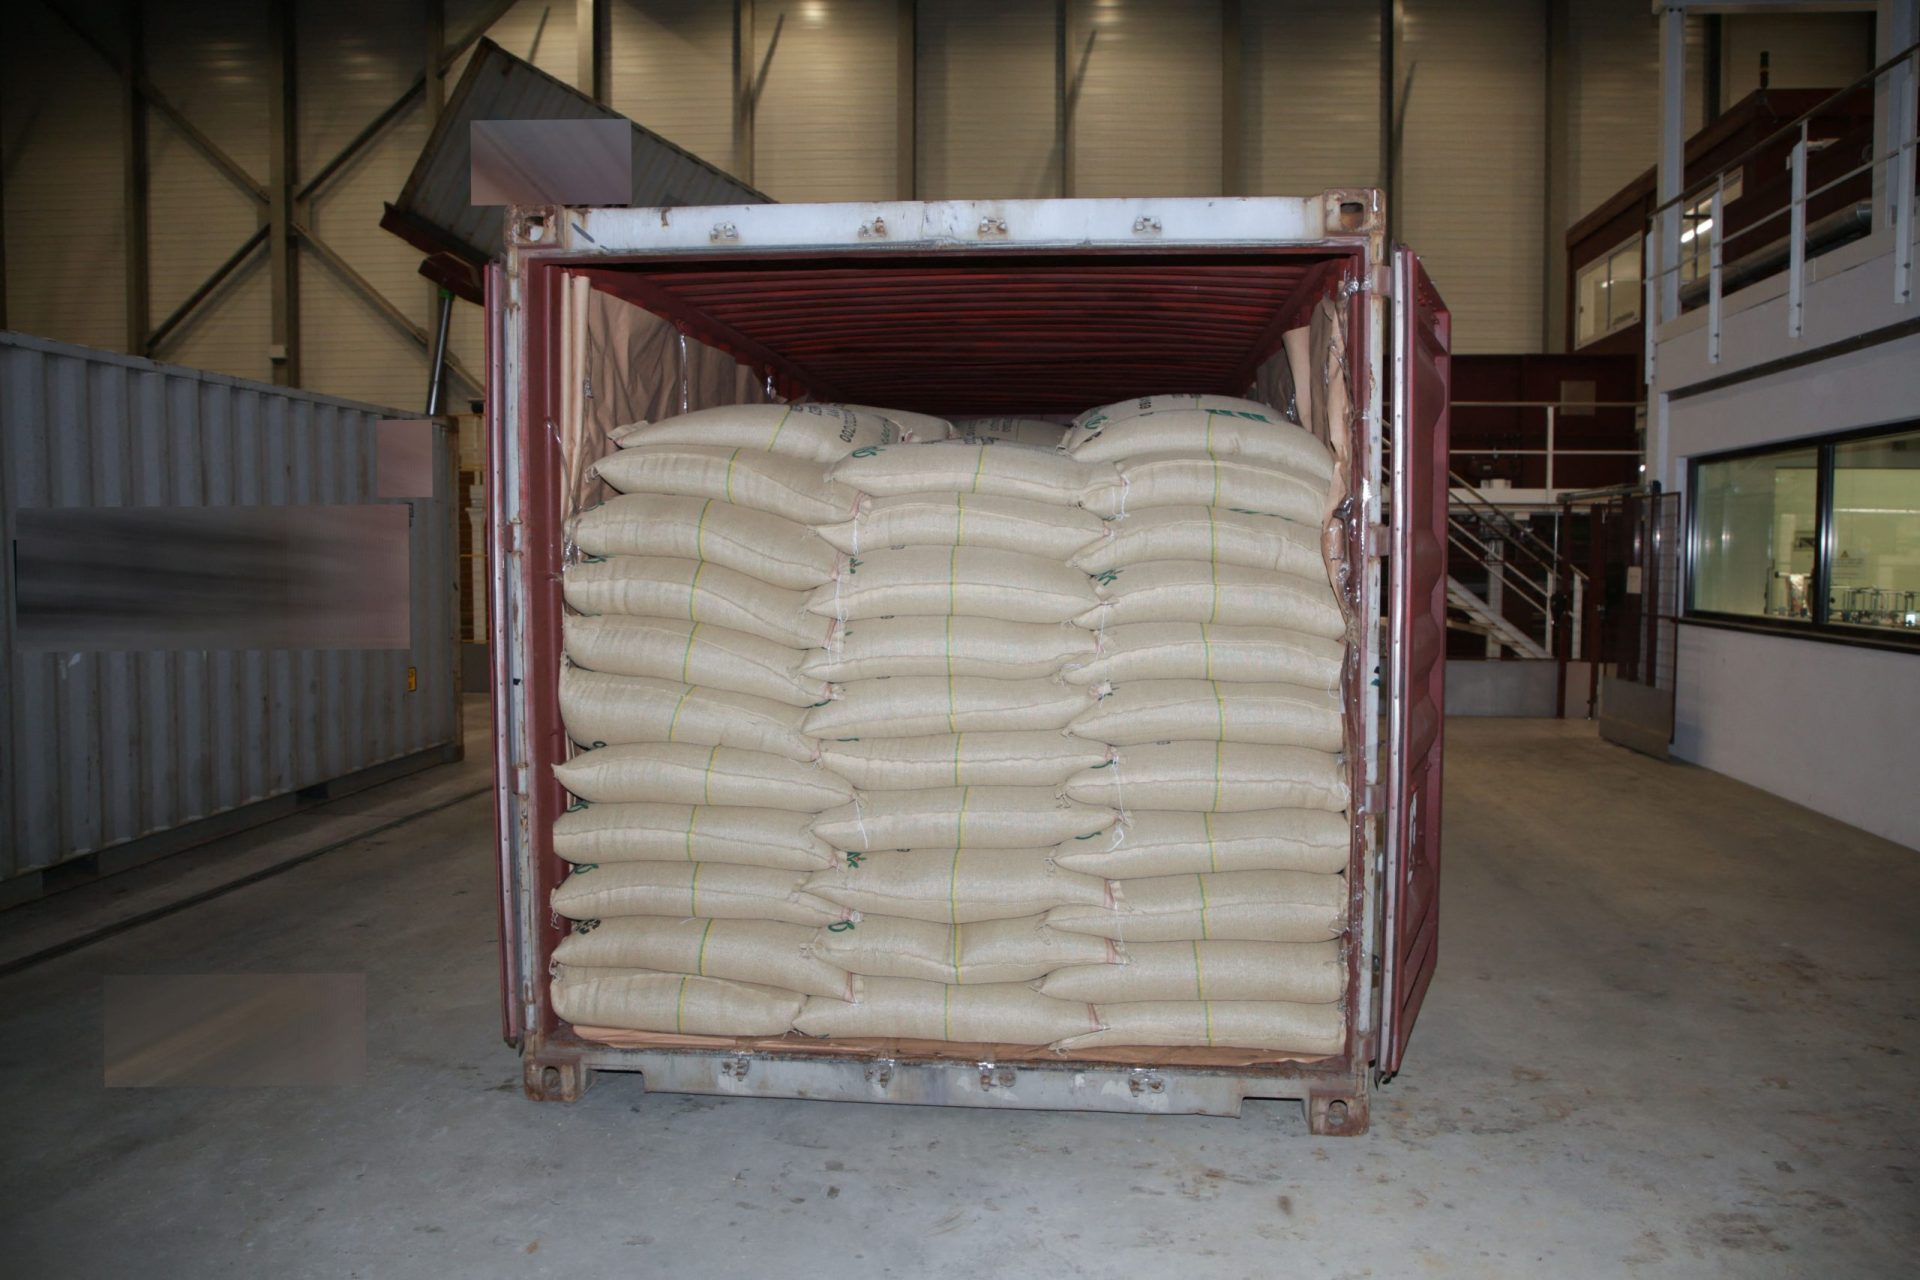 Trabalhadores de uma fábrica da Nespresso encontram 500 quilos de cocaína em sacos de grãos de café